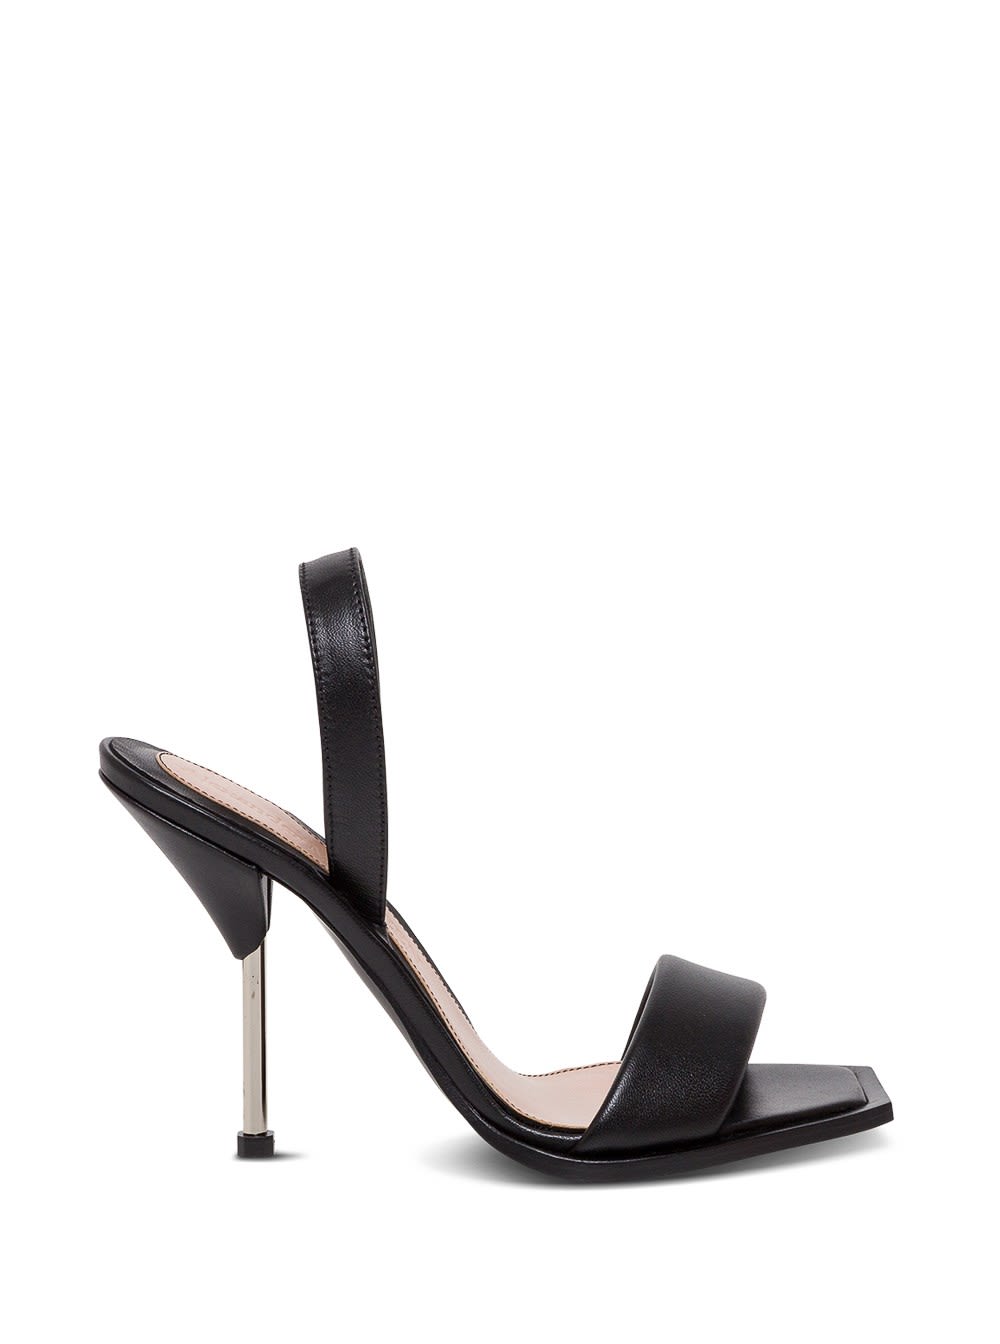 Alexander McQueen Black Leather Sandals With Metallic Heel